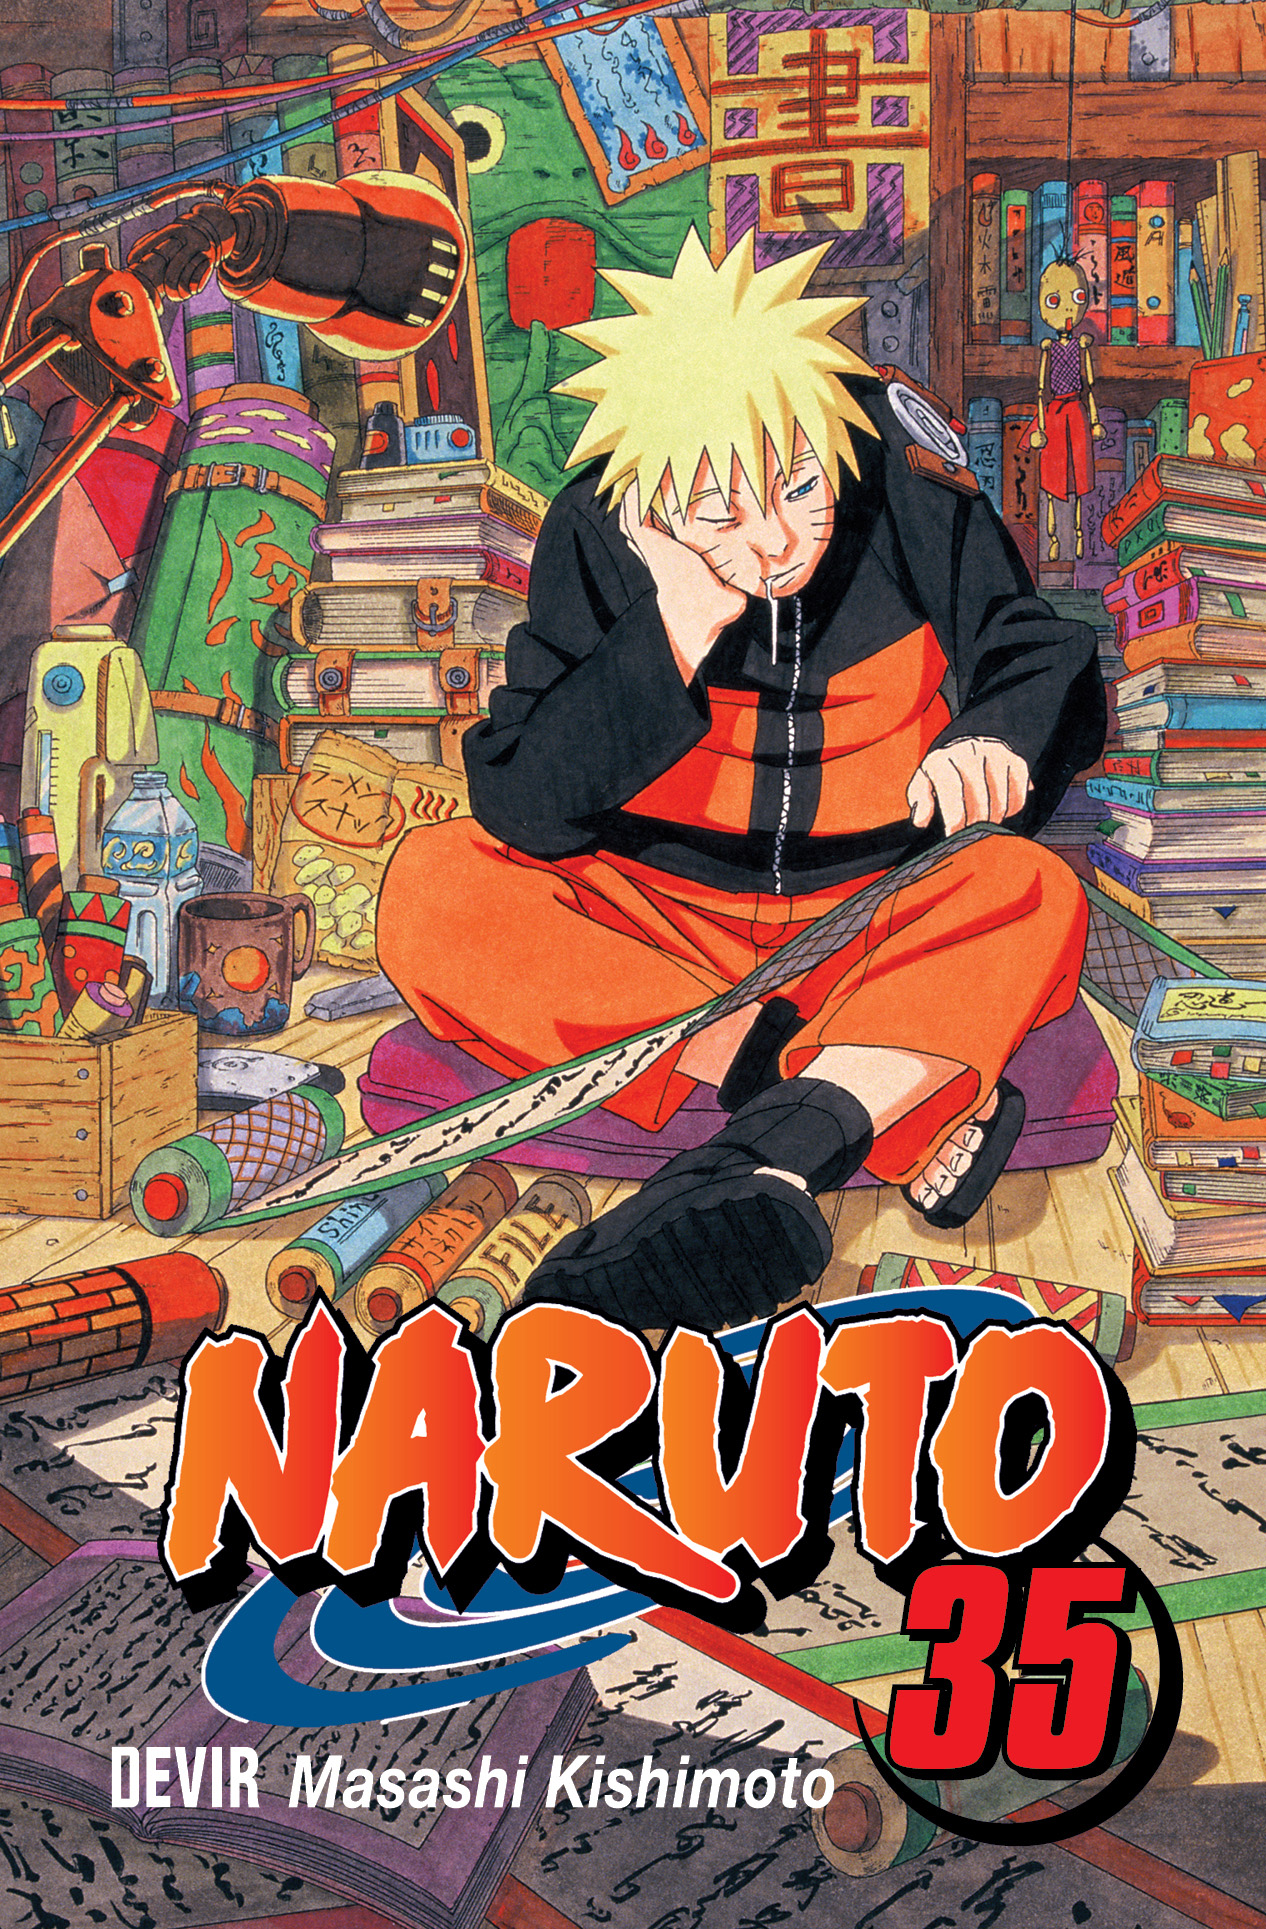 Editor de mangá manda alfinetada retroativa para dublagem de Naruto